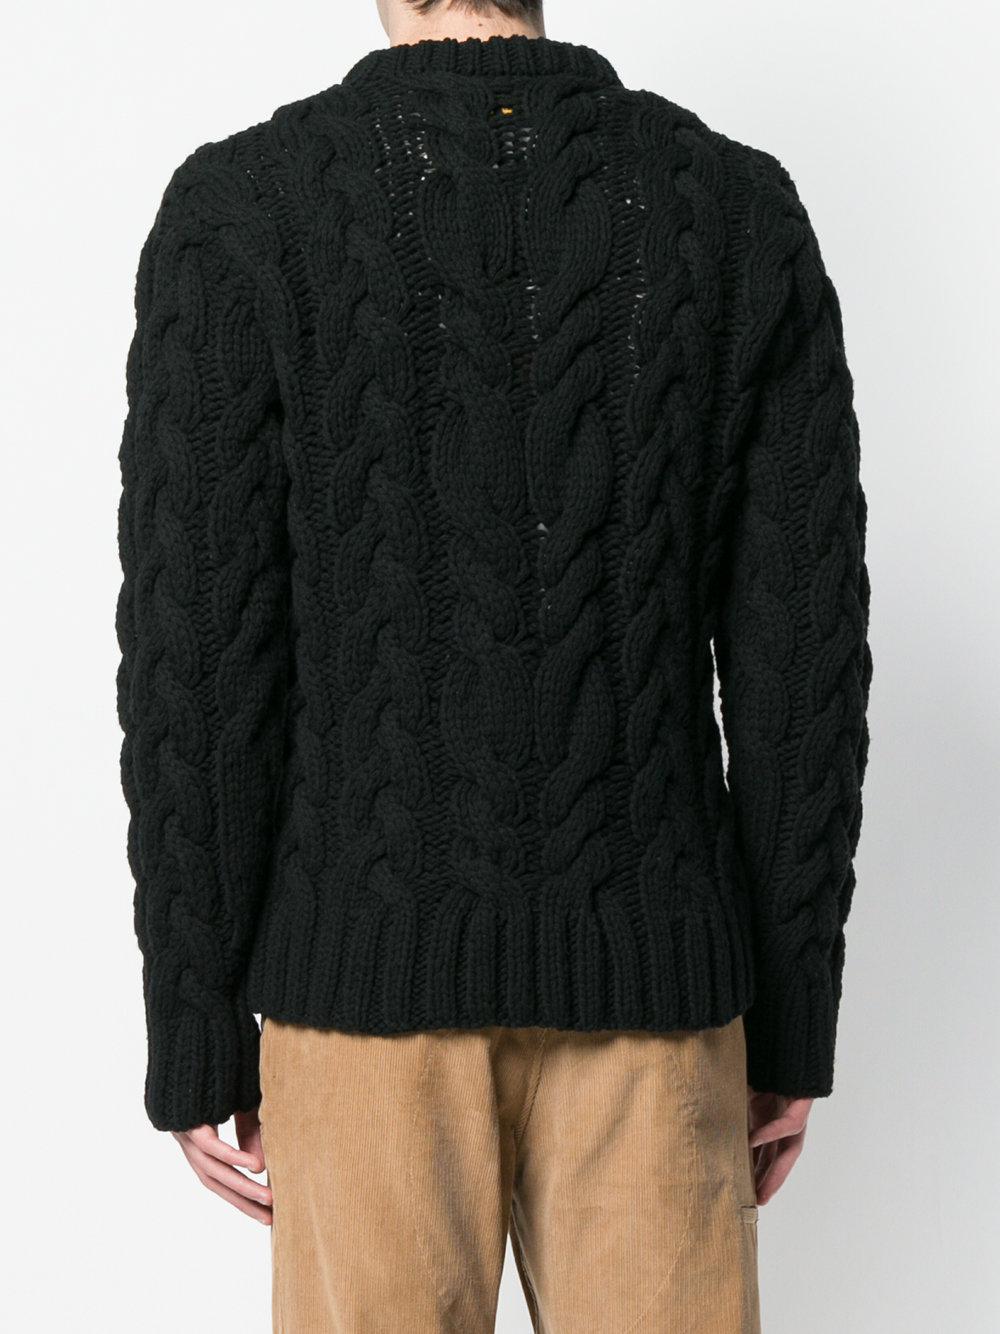 Neighborhood Fisherman Knit Sweater in Black for Men - Lyst